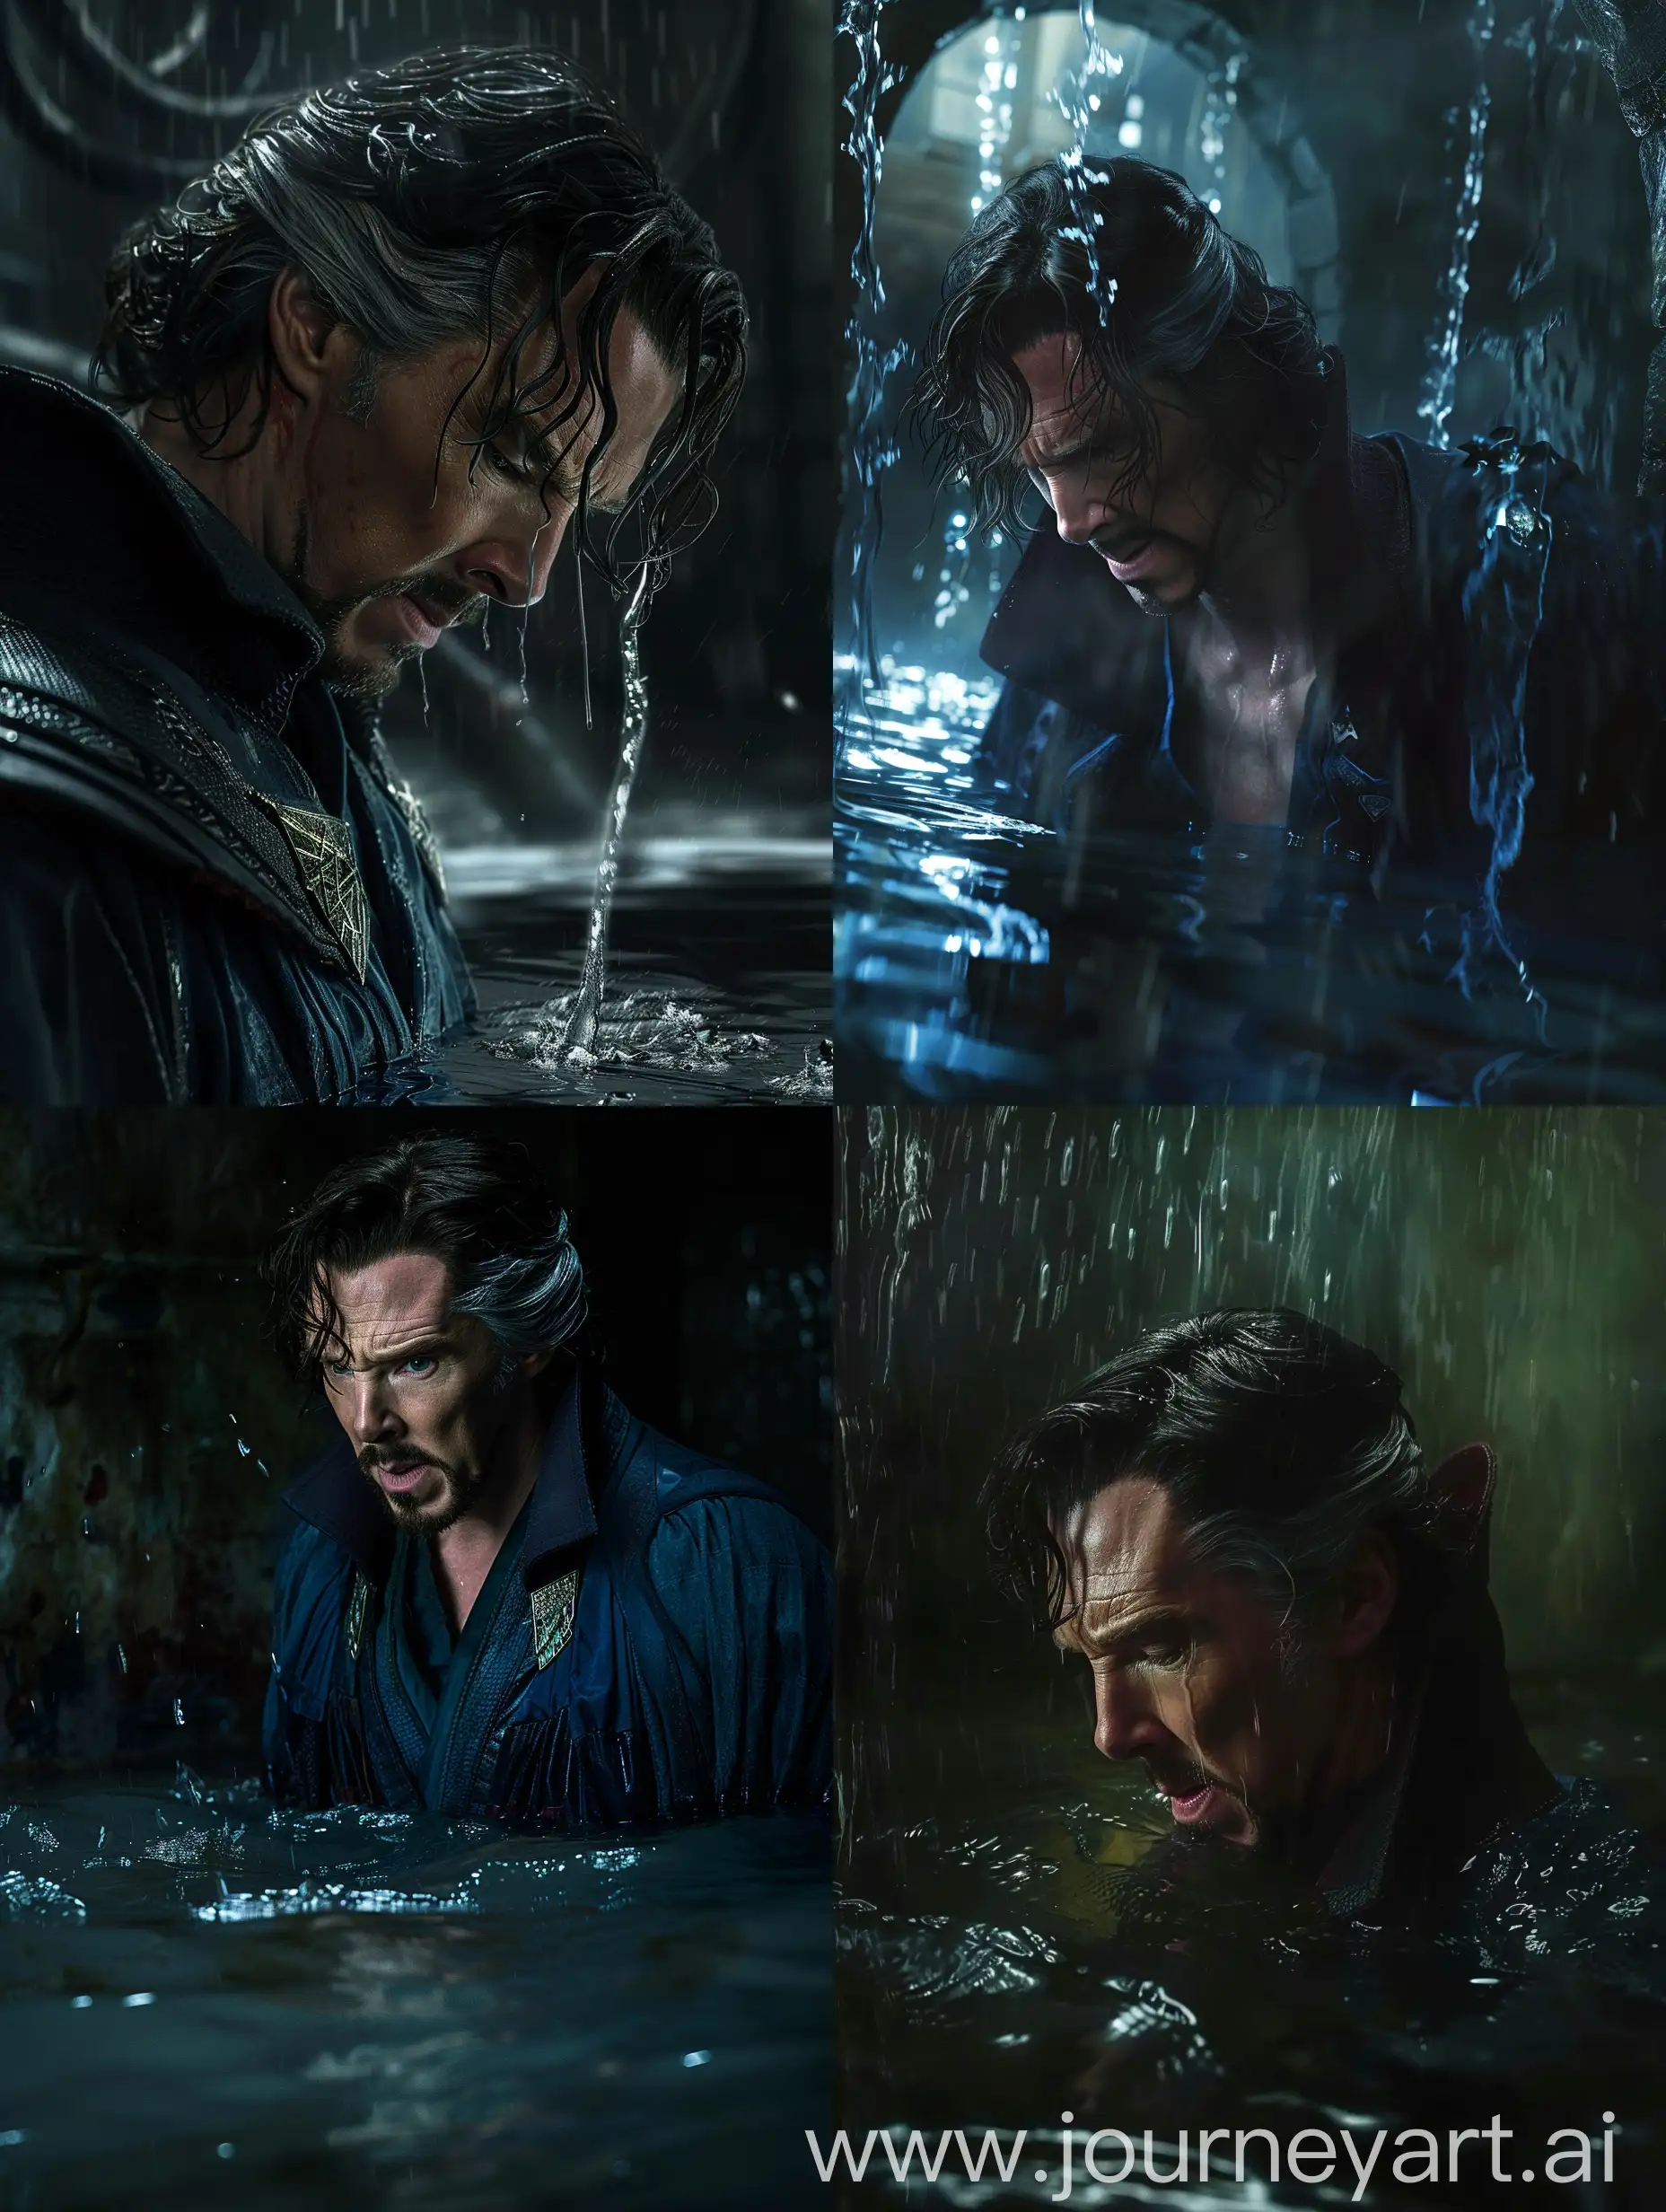 Doctor Strange, shoulder length wavy hair,  in a dark room, water rising to his knees, wet, in dispair.